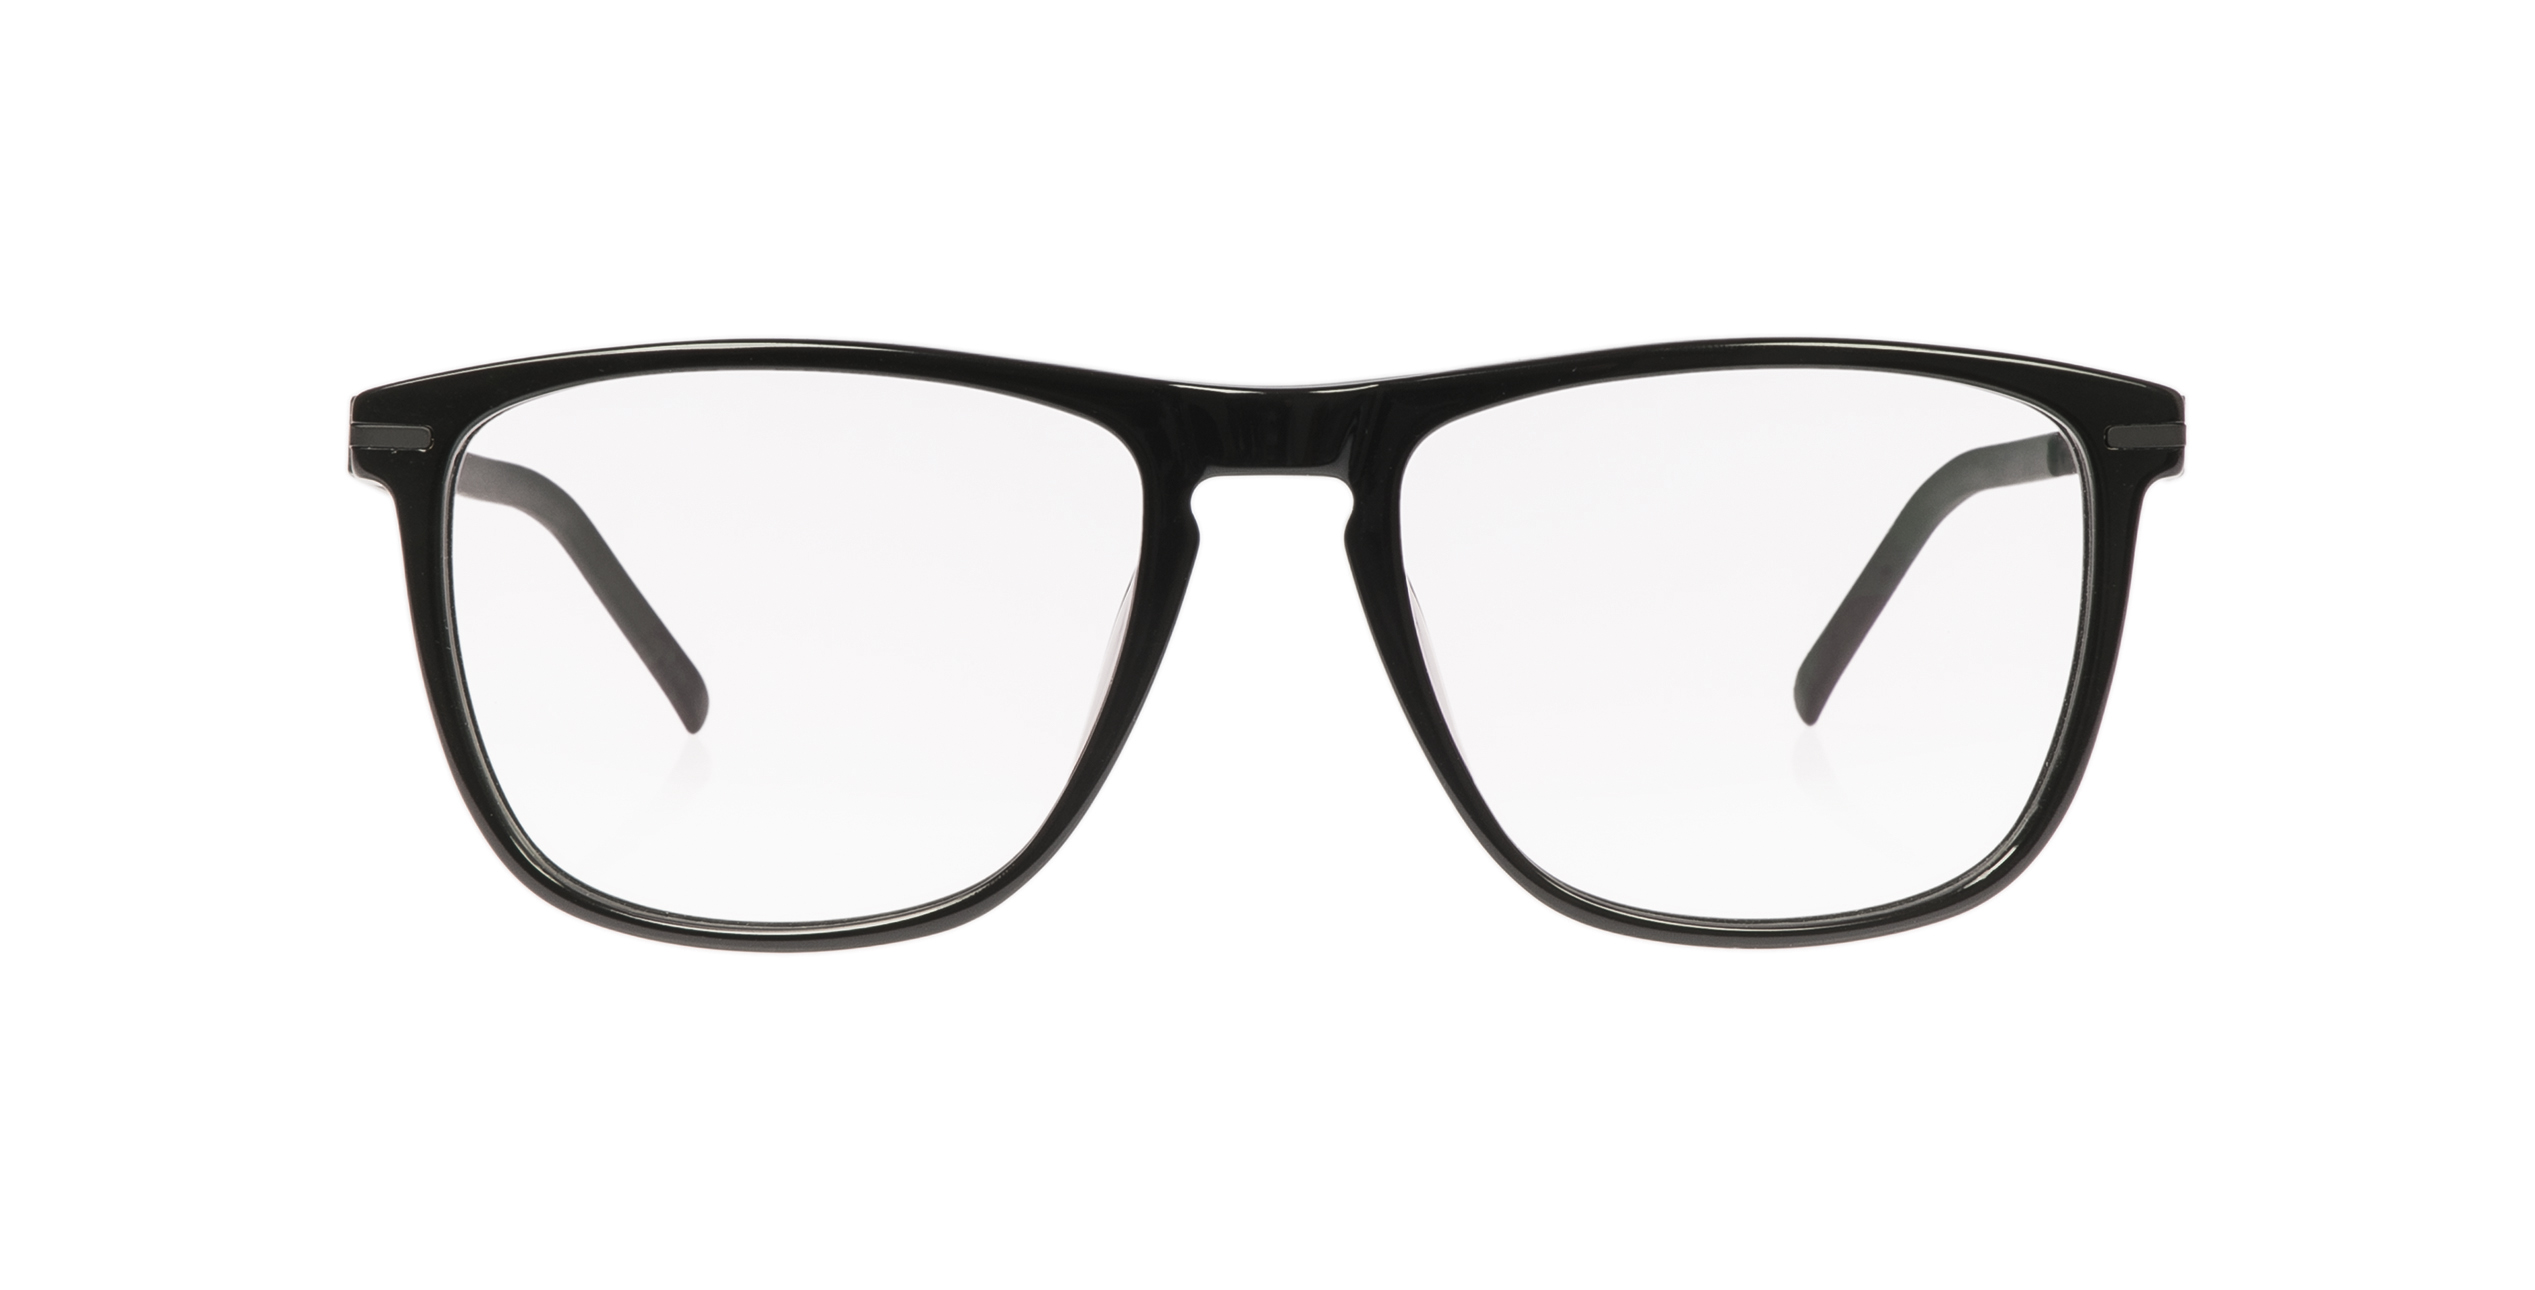 Baldessarini brille - Die preiswertesten Baldessarini brille auf einen Blick